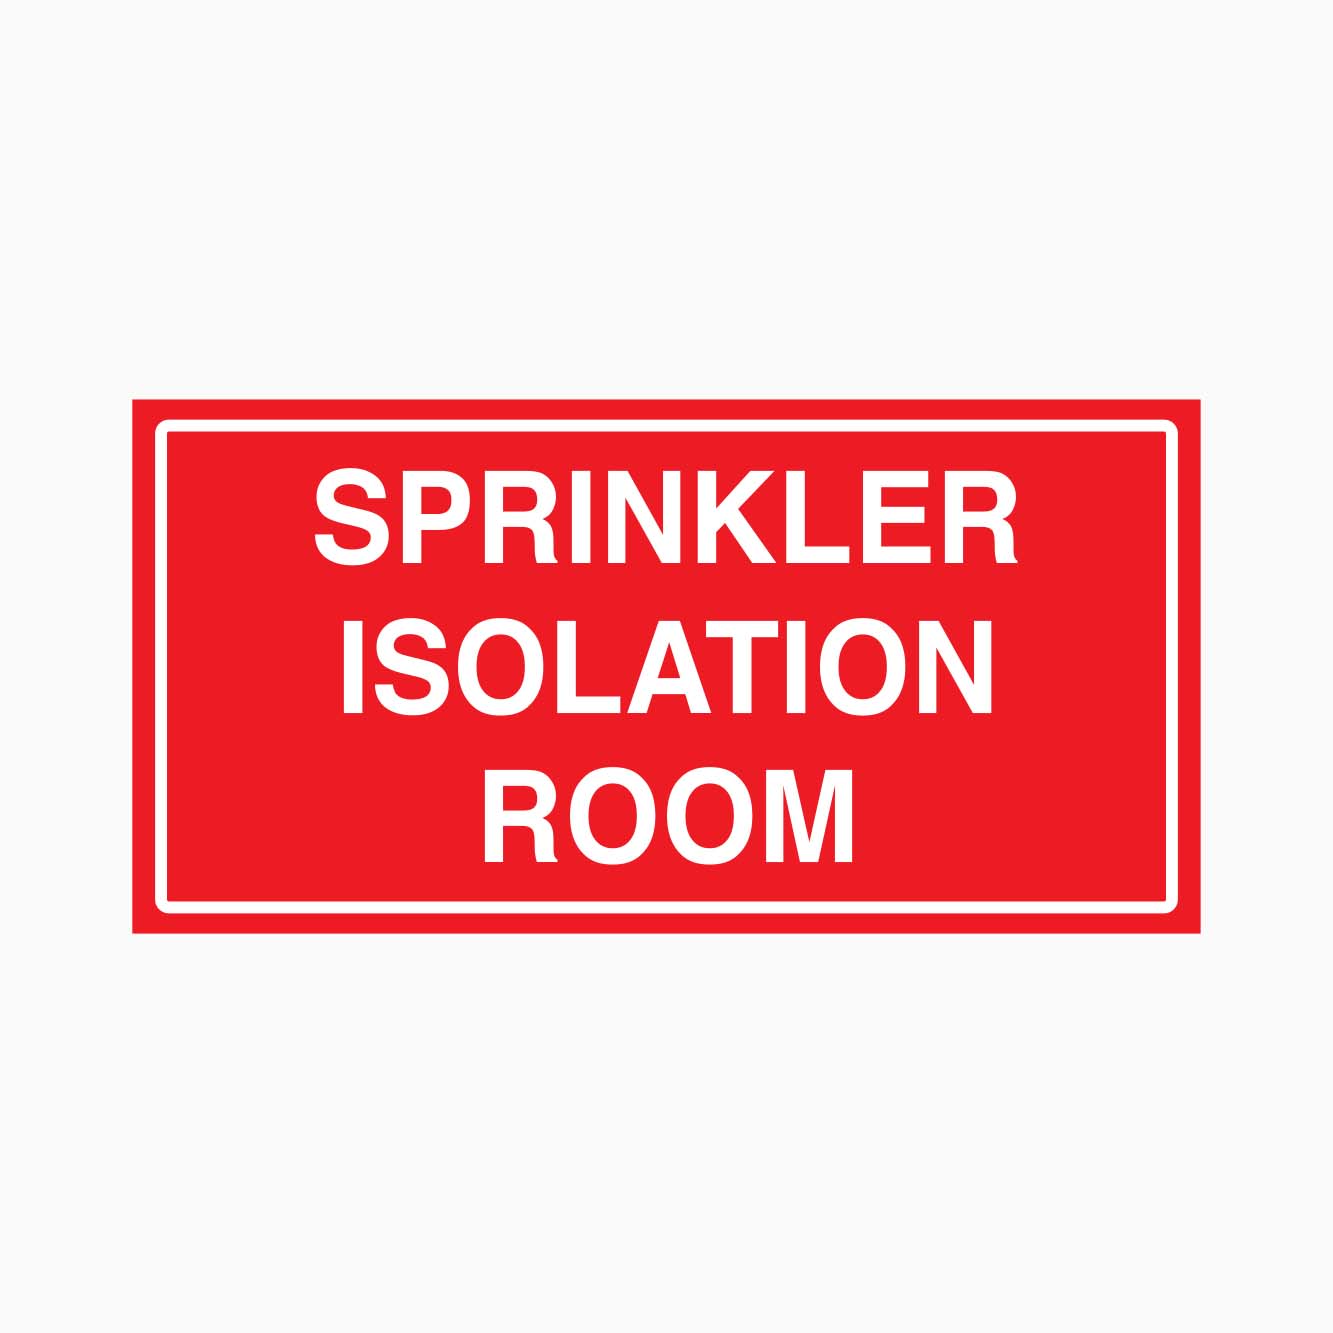 SPRINKLER ISOLATION ROOM SIGN - GET SIGNS 